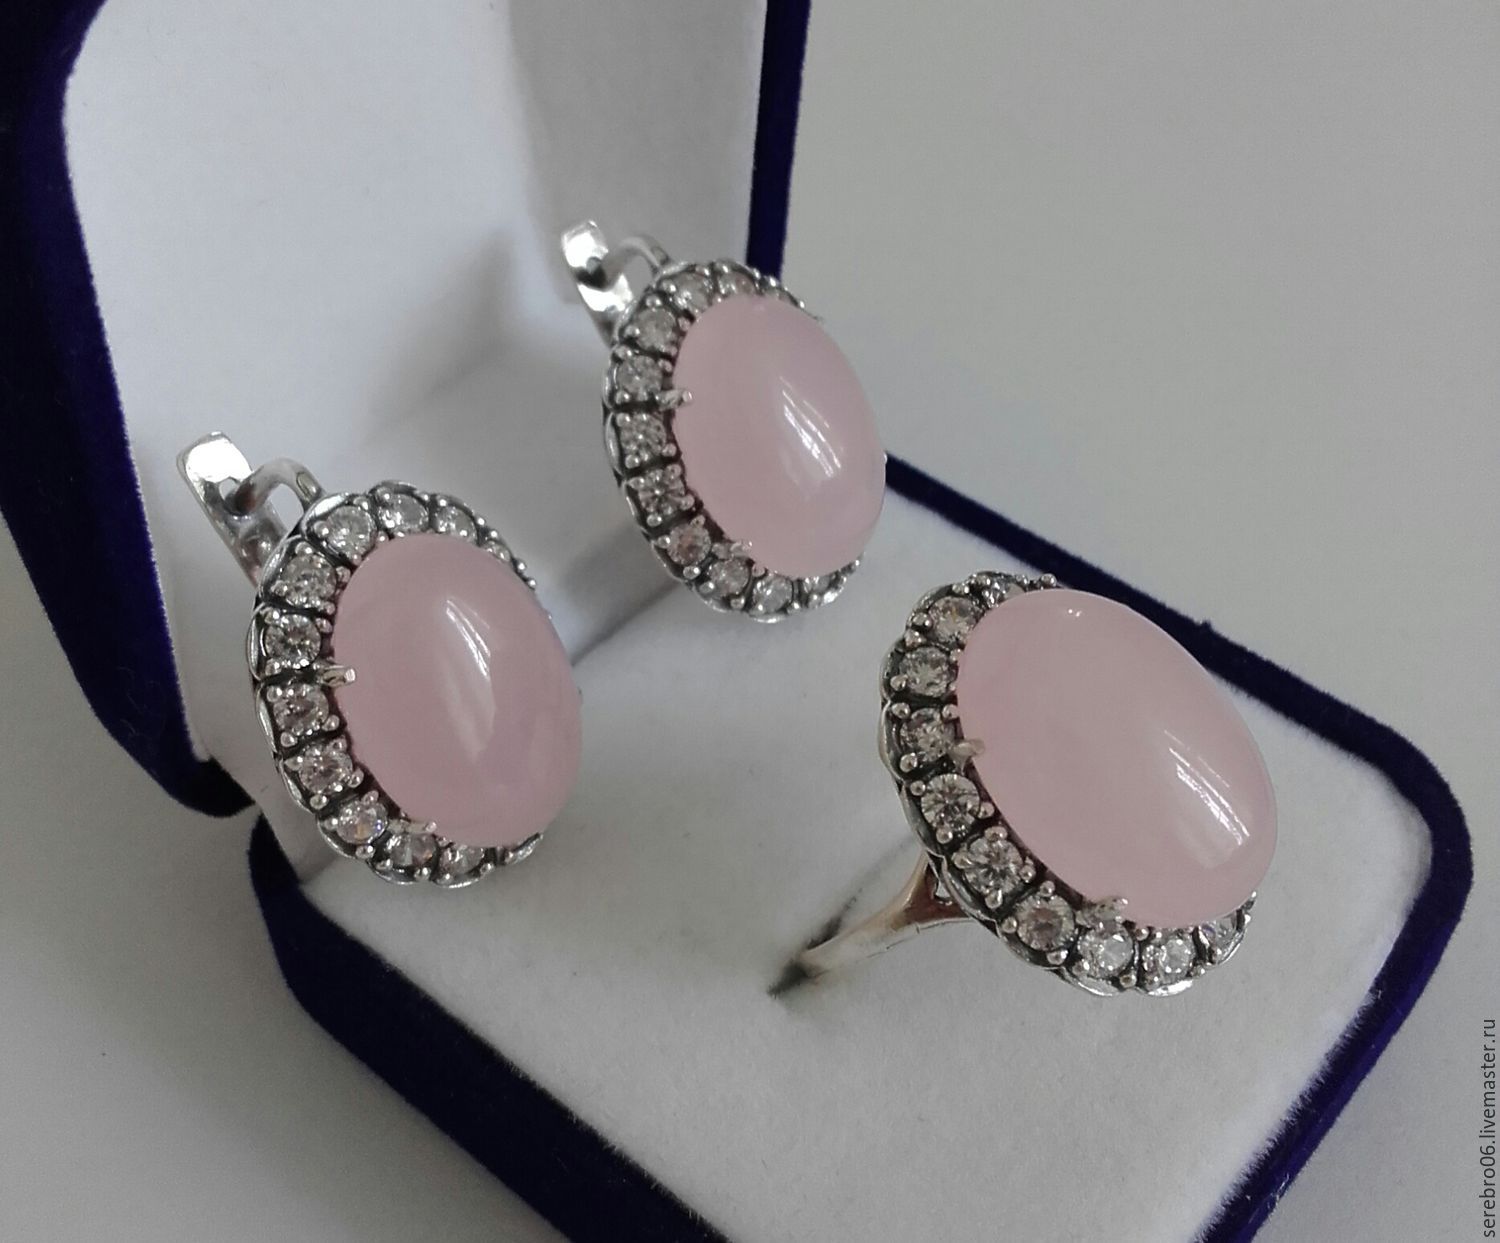 Изделия из серебра с камнями. 33357- Комплект Caramel из серебра с розовым кварцем - 3 изделия. Серьги, розовый кварц, мцв842. Ювелирочка розовый кварц серебро. Ювелирочка серьги с розовым кварцем.